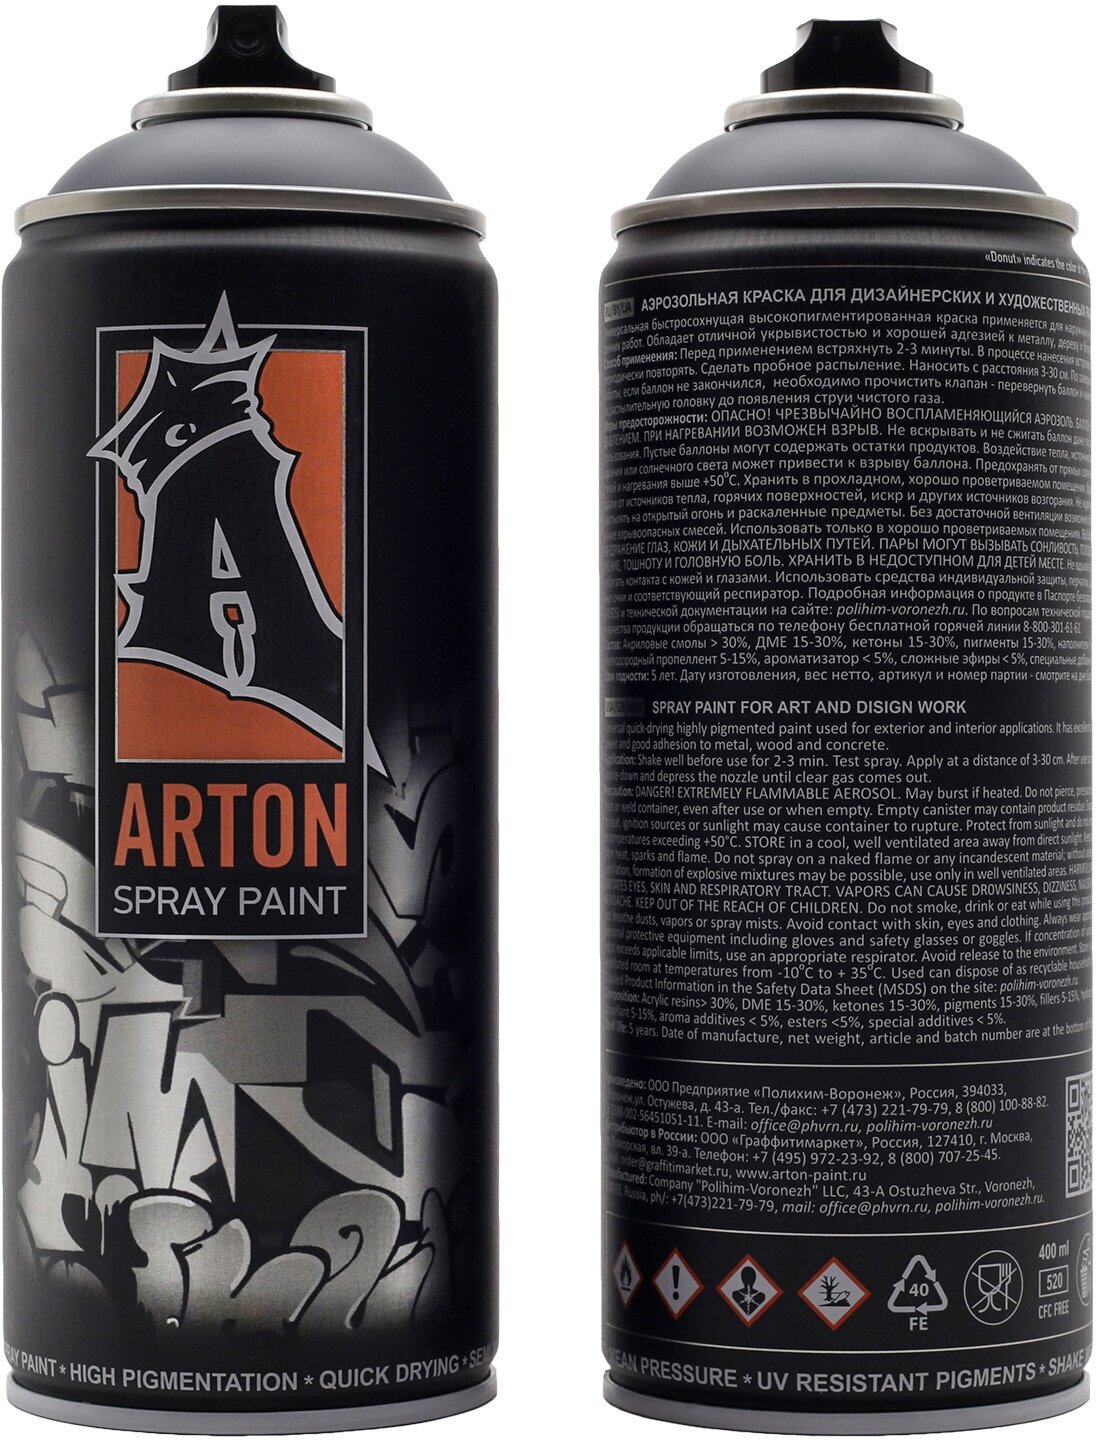 Краска для граффити "Arton" цвет A705 Волк (Wolf) аэрозольная, 400 мл - фотография № 12